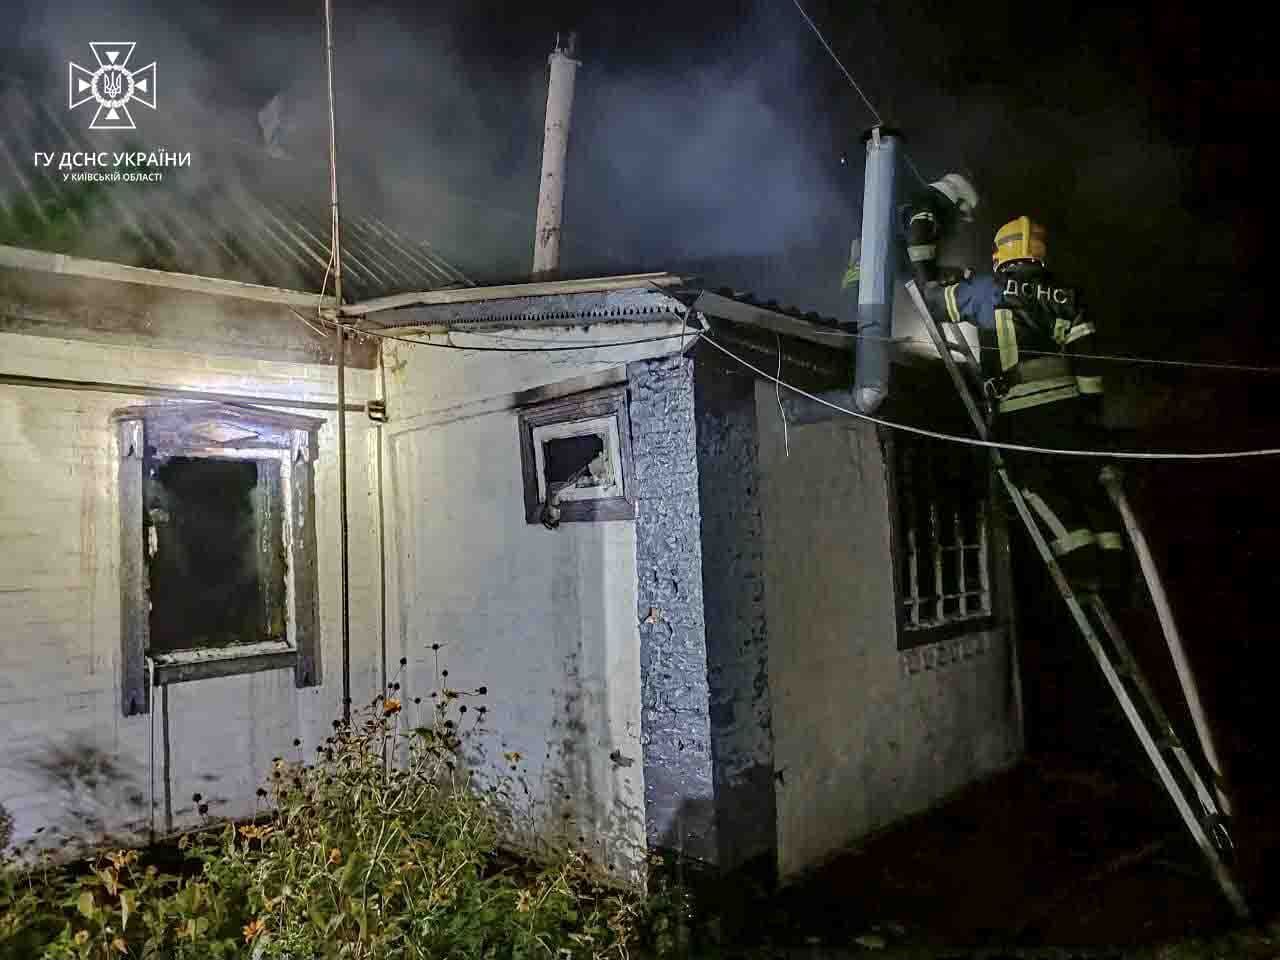 В Киевской области во время пожара погиб мужчина: фото и подробности трагедии